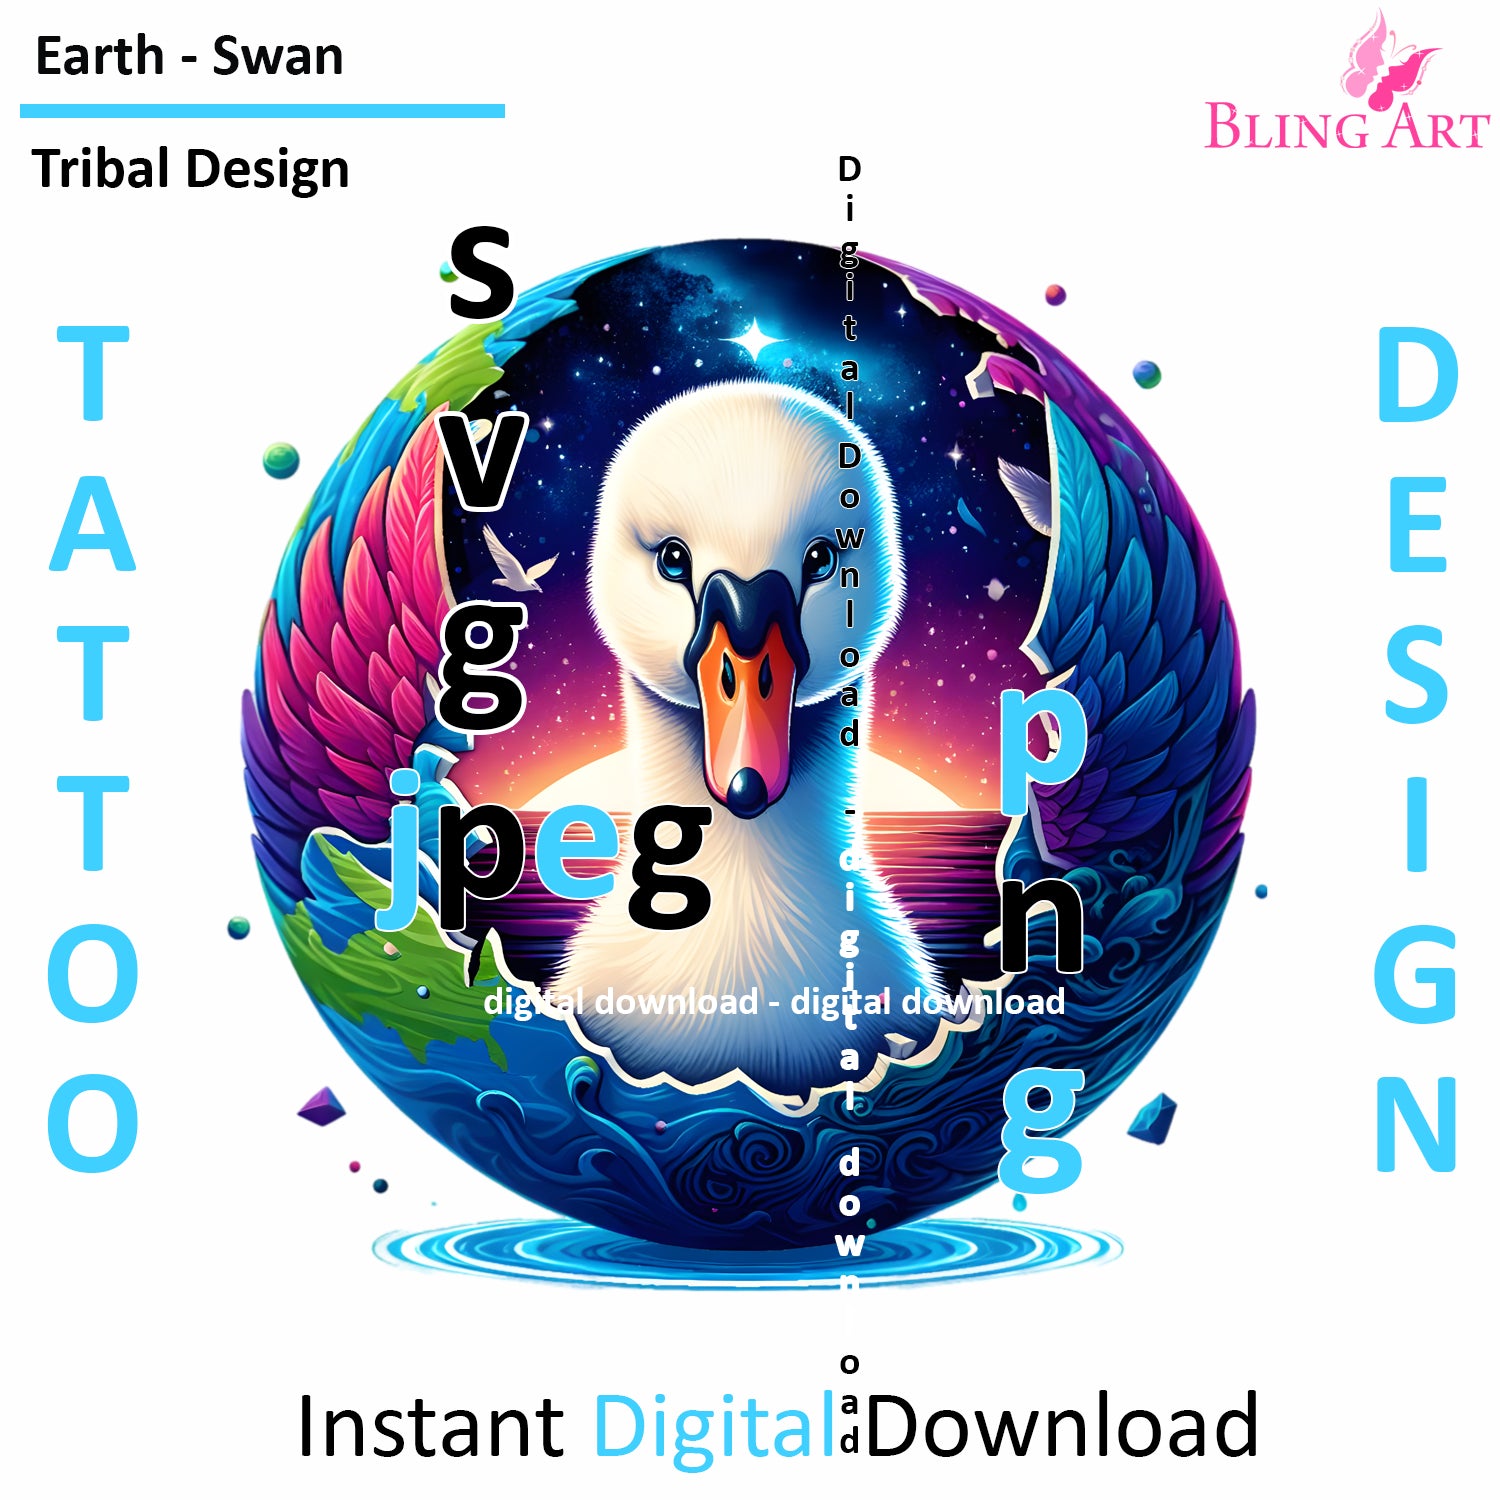 Swan World Tribal Tattoo Art - Digital Design (PNG, JPEG, SVG) - Instant Download for Tattoos, T-Shirts, Wall Art